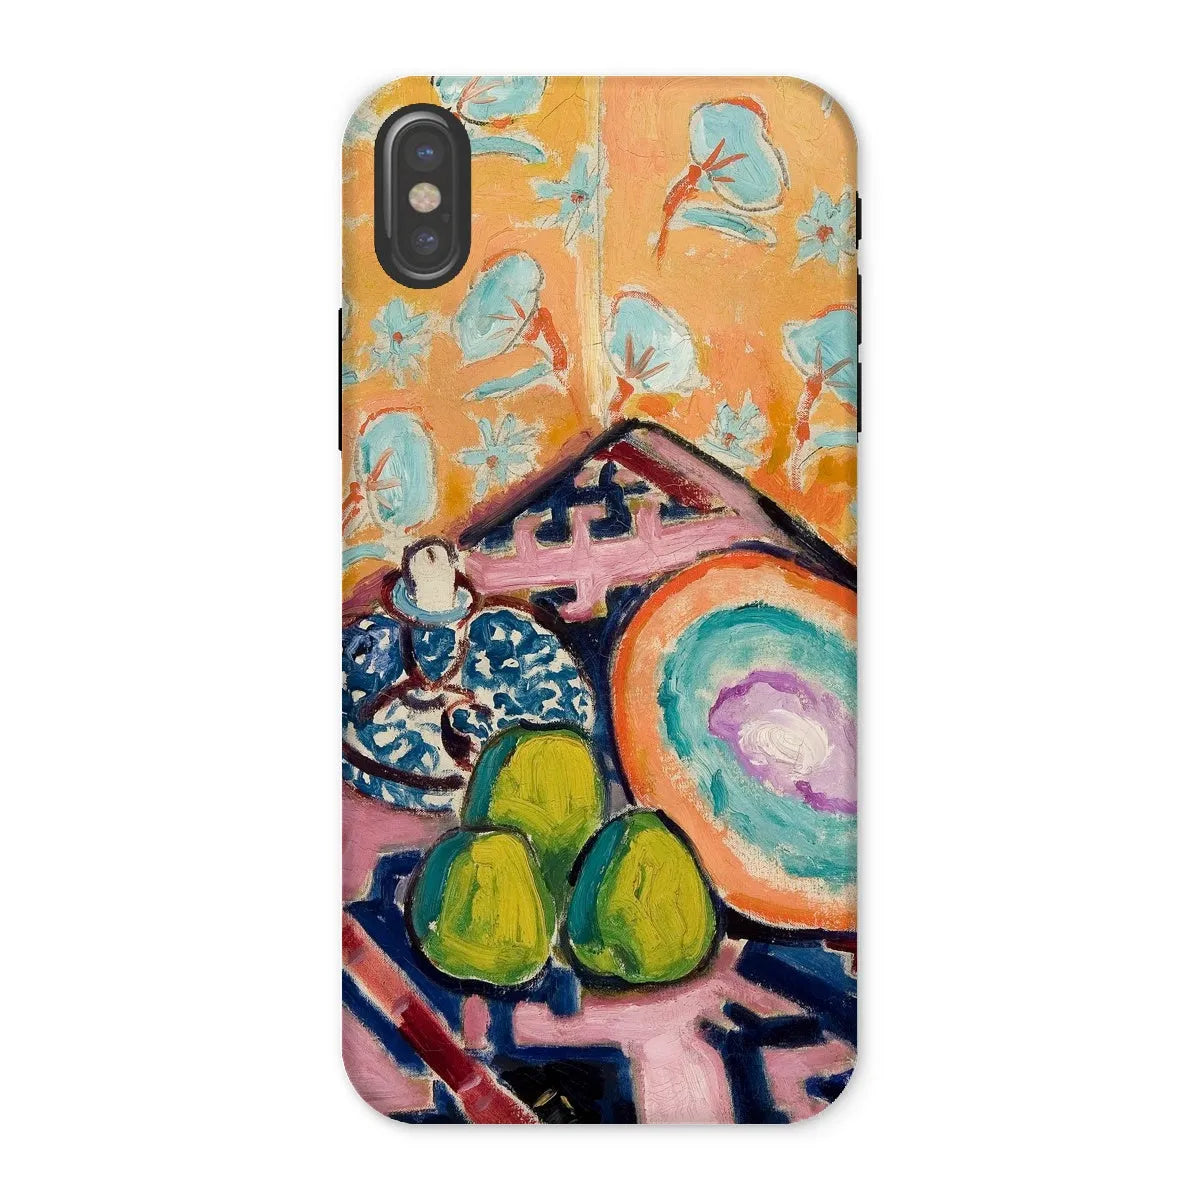 Still Life - Modernist Art Phone Case - Alfred Henry Maurer - Iphone x / Matte - Mobile Phone Cases - Aesthetic Art